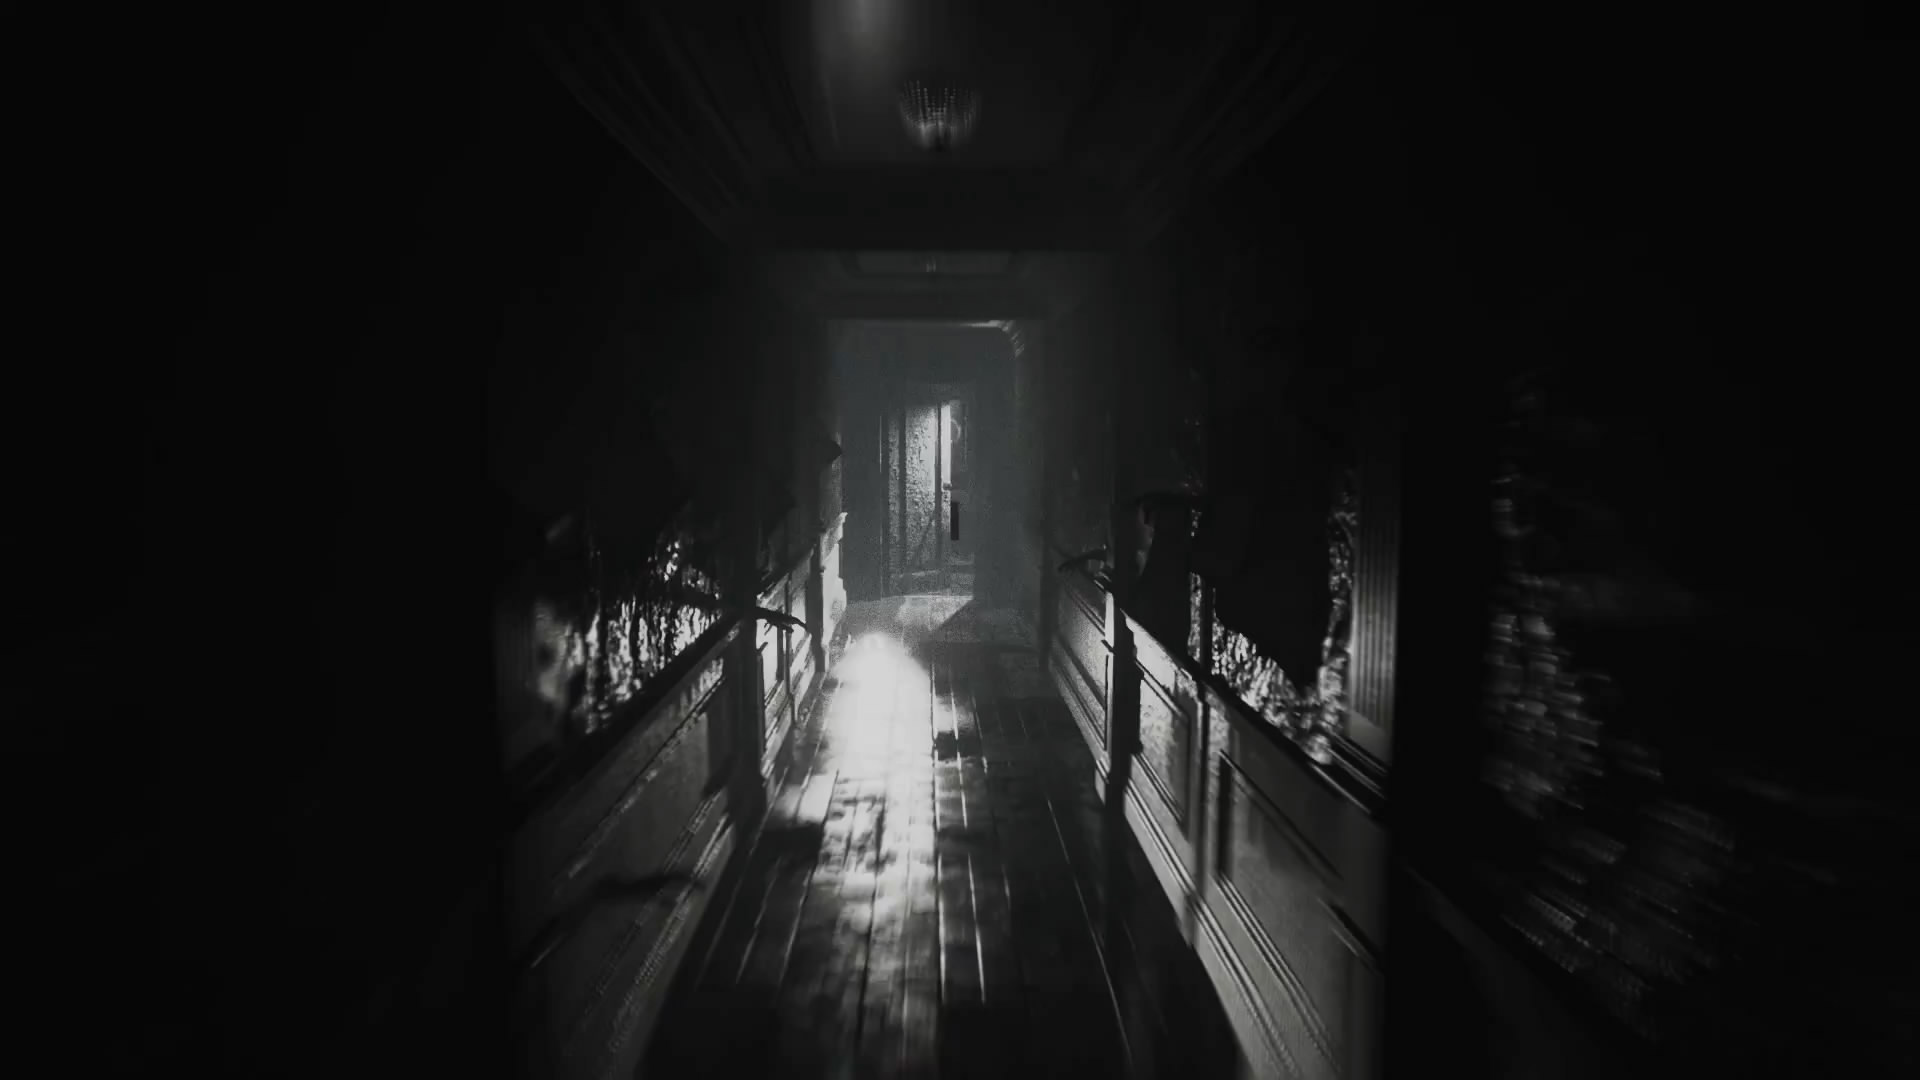 恐怖游戏续作《层层恐惧2》公布 探索人类内心黑暗